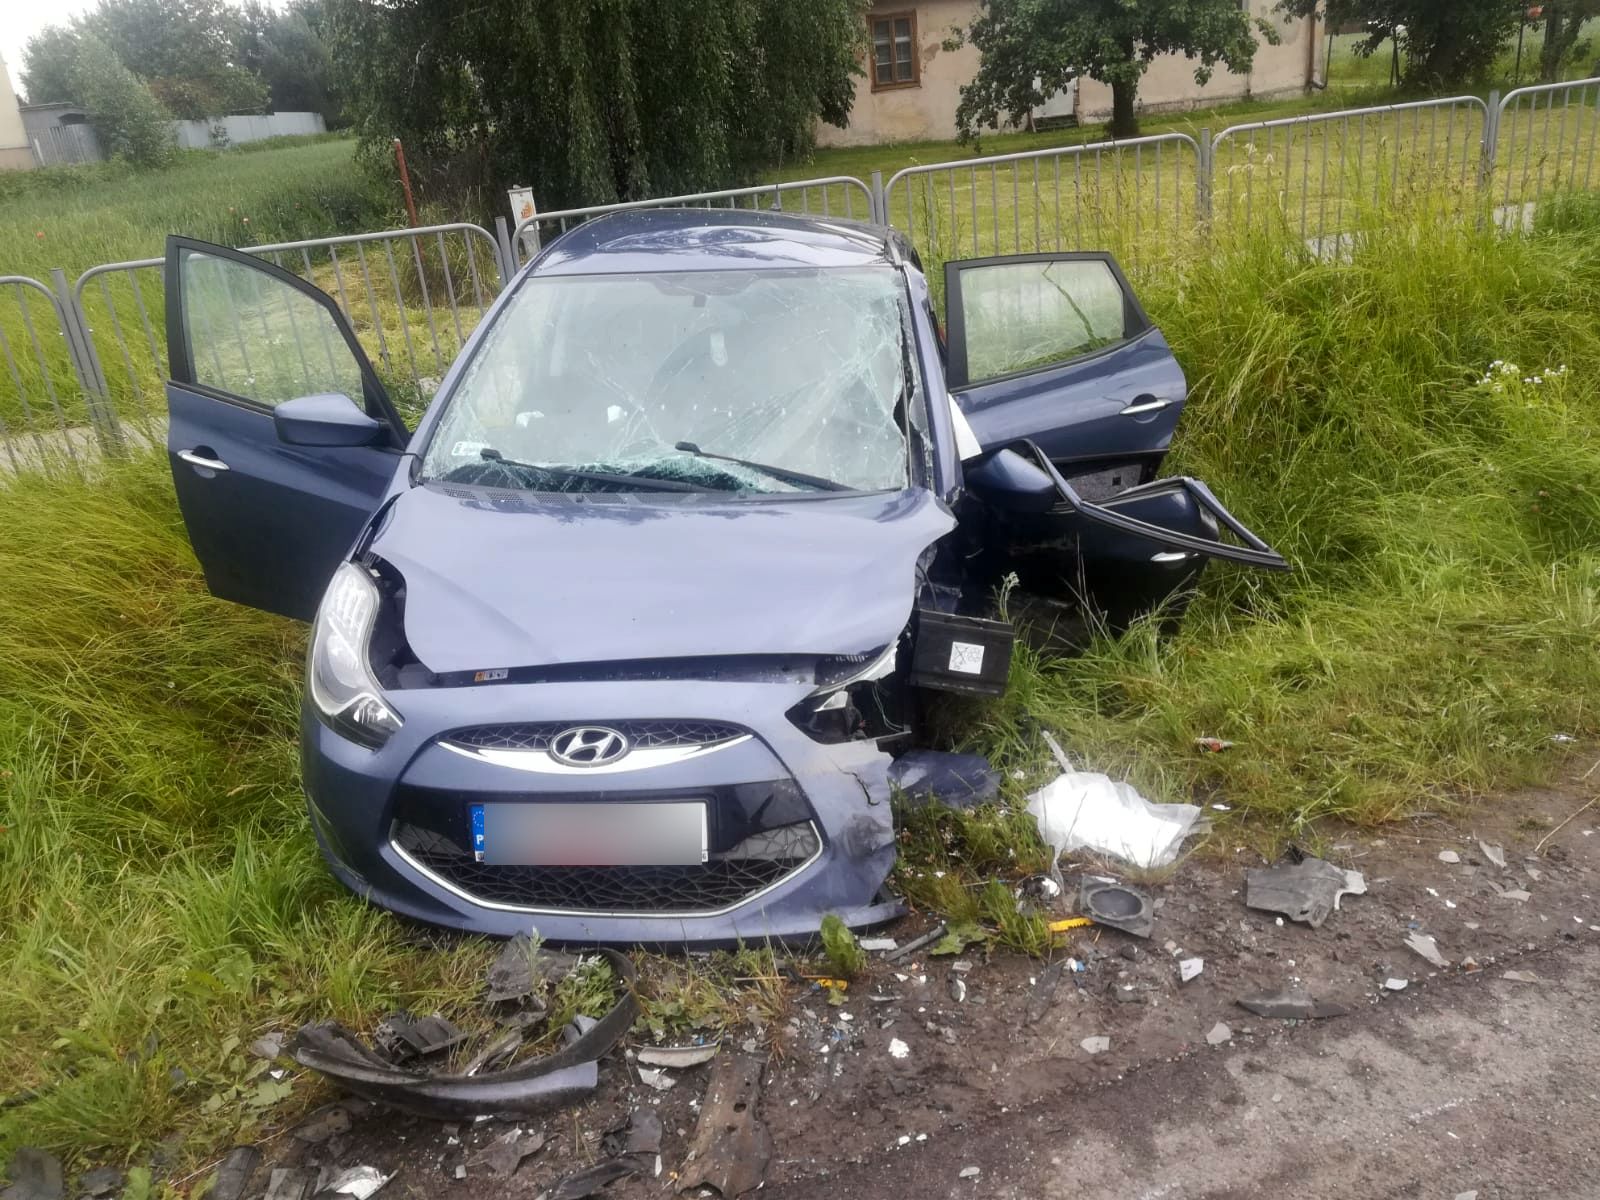 Groźny wypadek na trasie Lublin – Biłgoraj. Są ranni i problemy z przejazdem (foto)